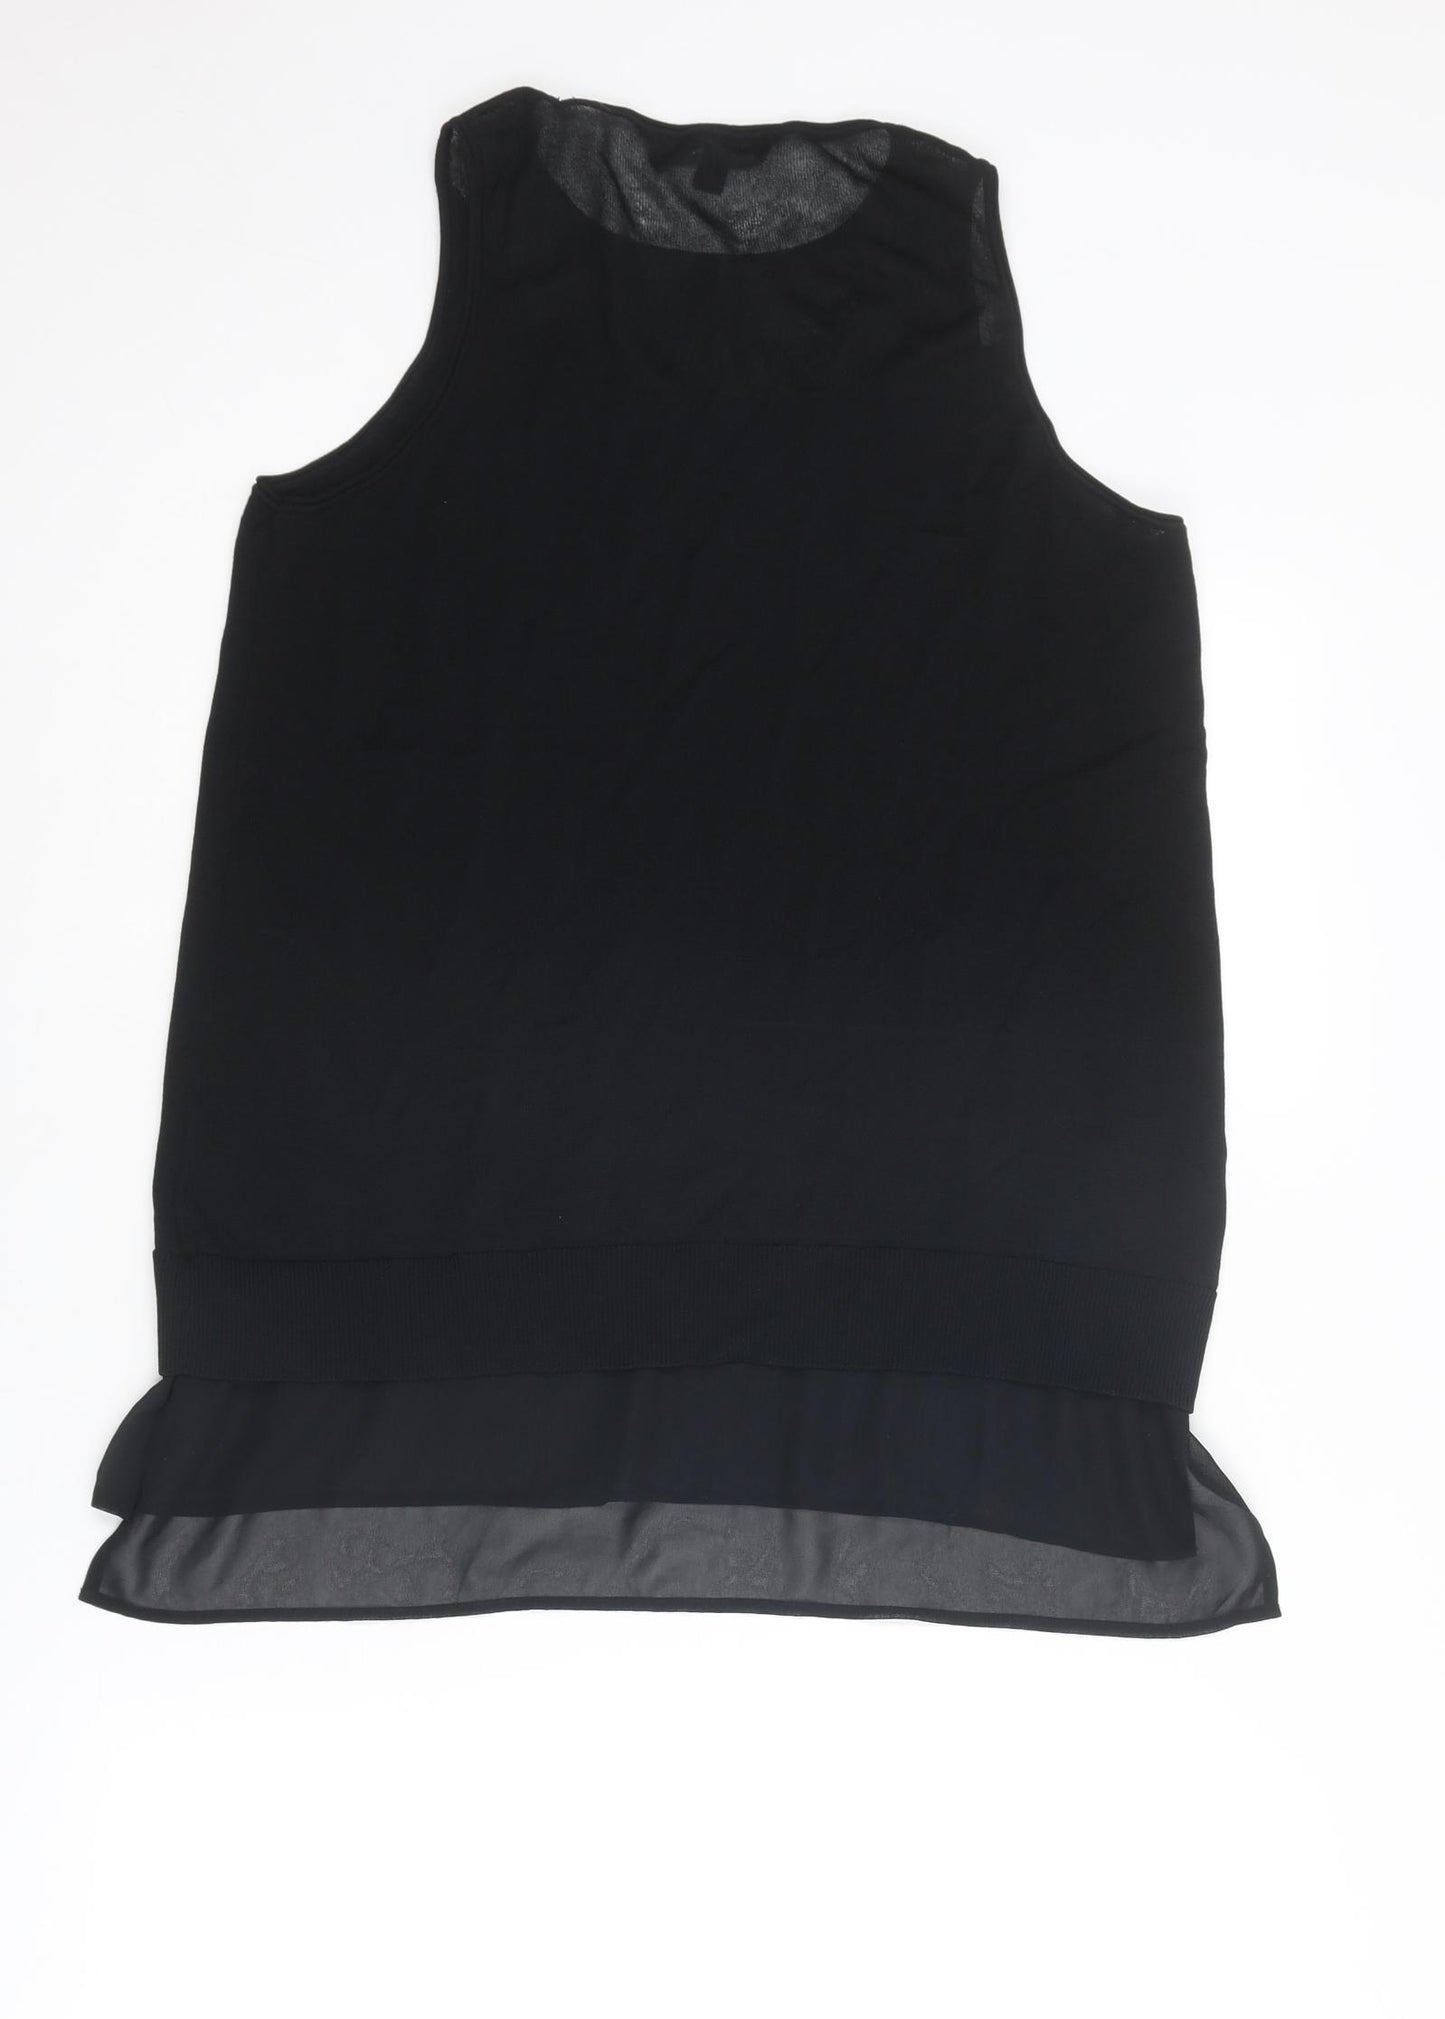 NEXT Womens Black Round Neck Viscose Vest Jumper Size M